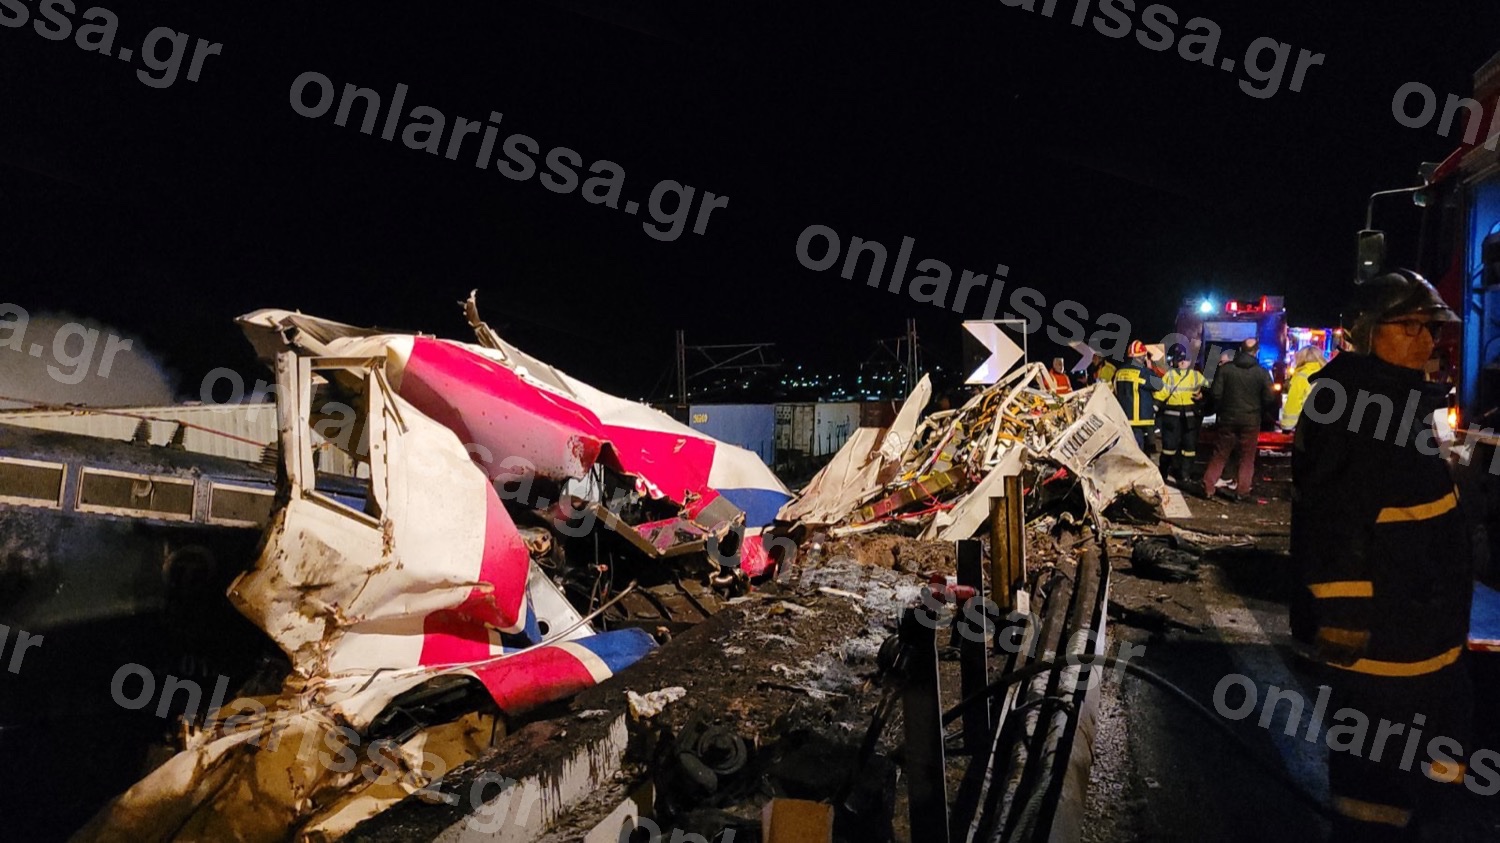 ΕΚΤΑΚΤΟ: Σύγκρουση αμαξοστοιχιών έξω από τη Λάρισα – Αναφορές για νεκρούς και πολλούς τραυματίες